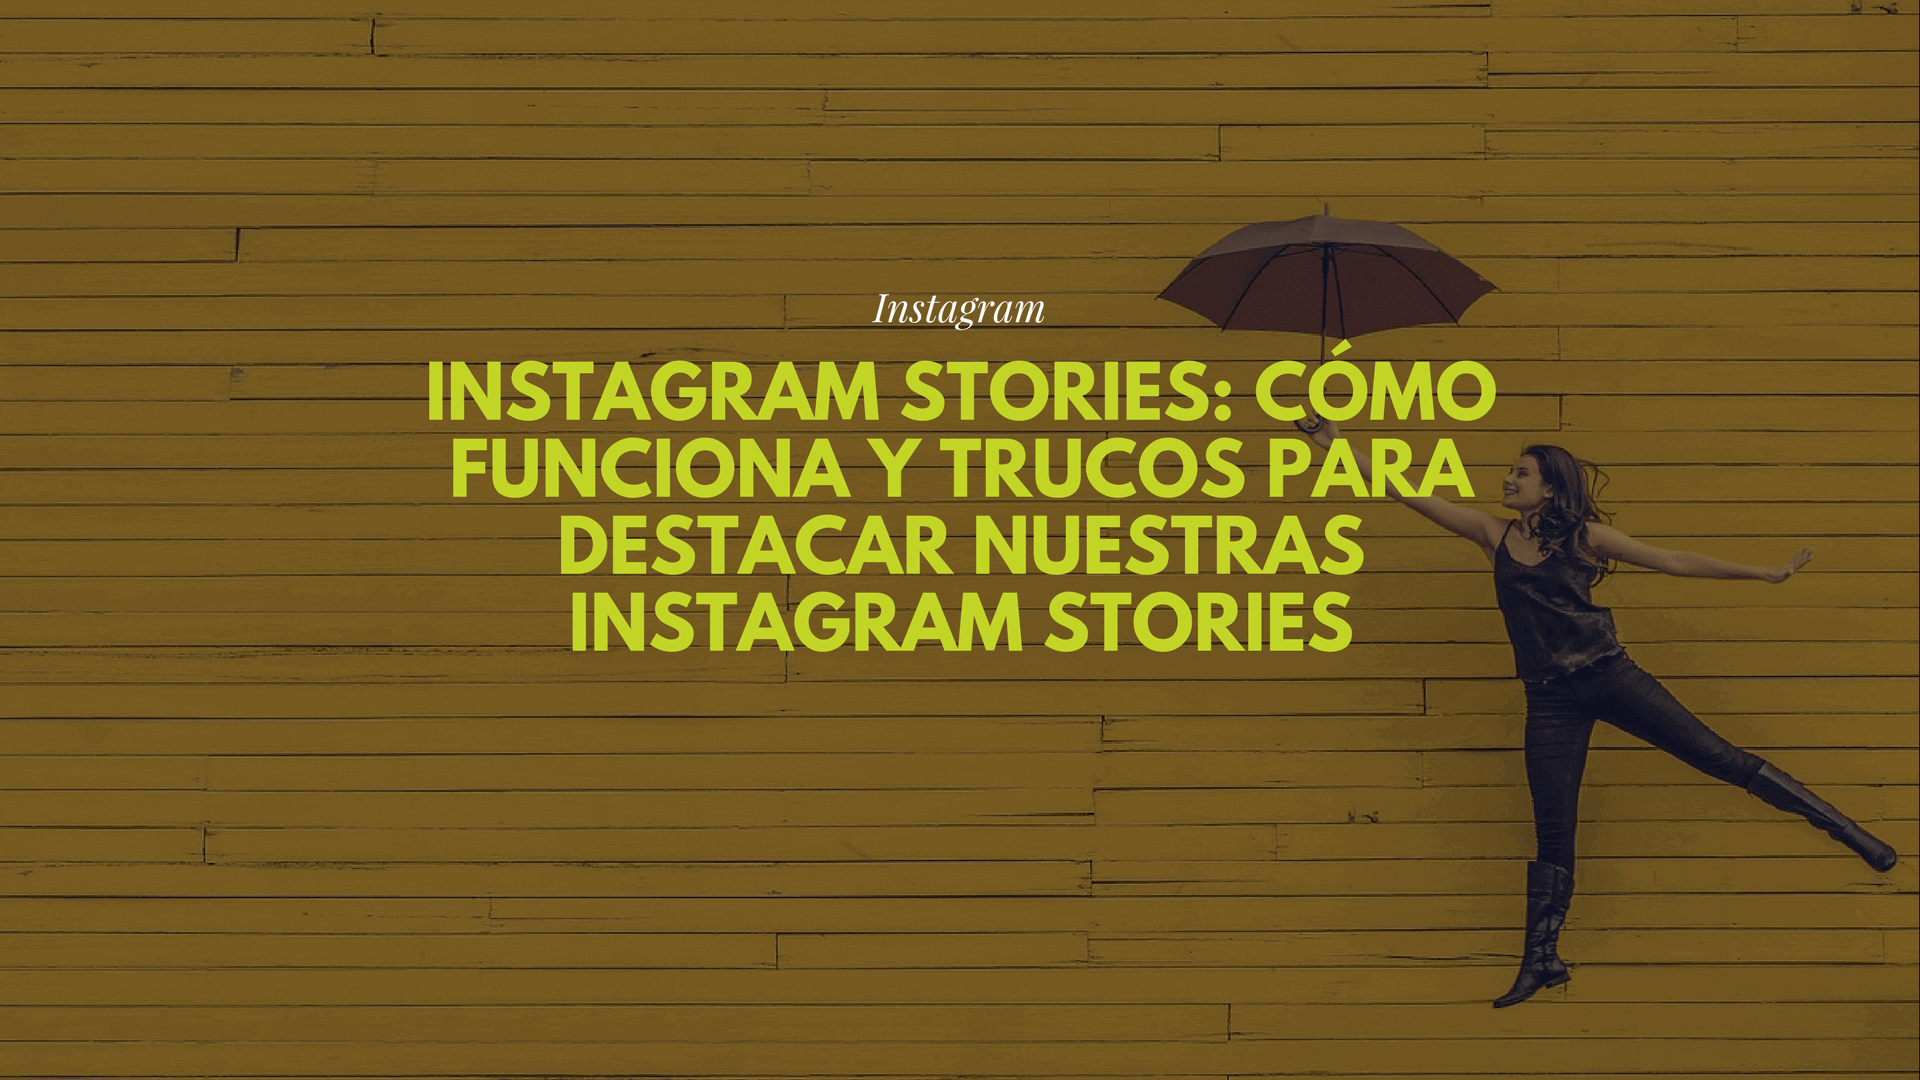 Instagram Stories: cómo funciona y trucos para destacar nuestras Instagram Stories